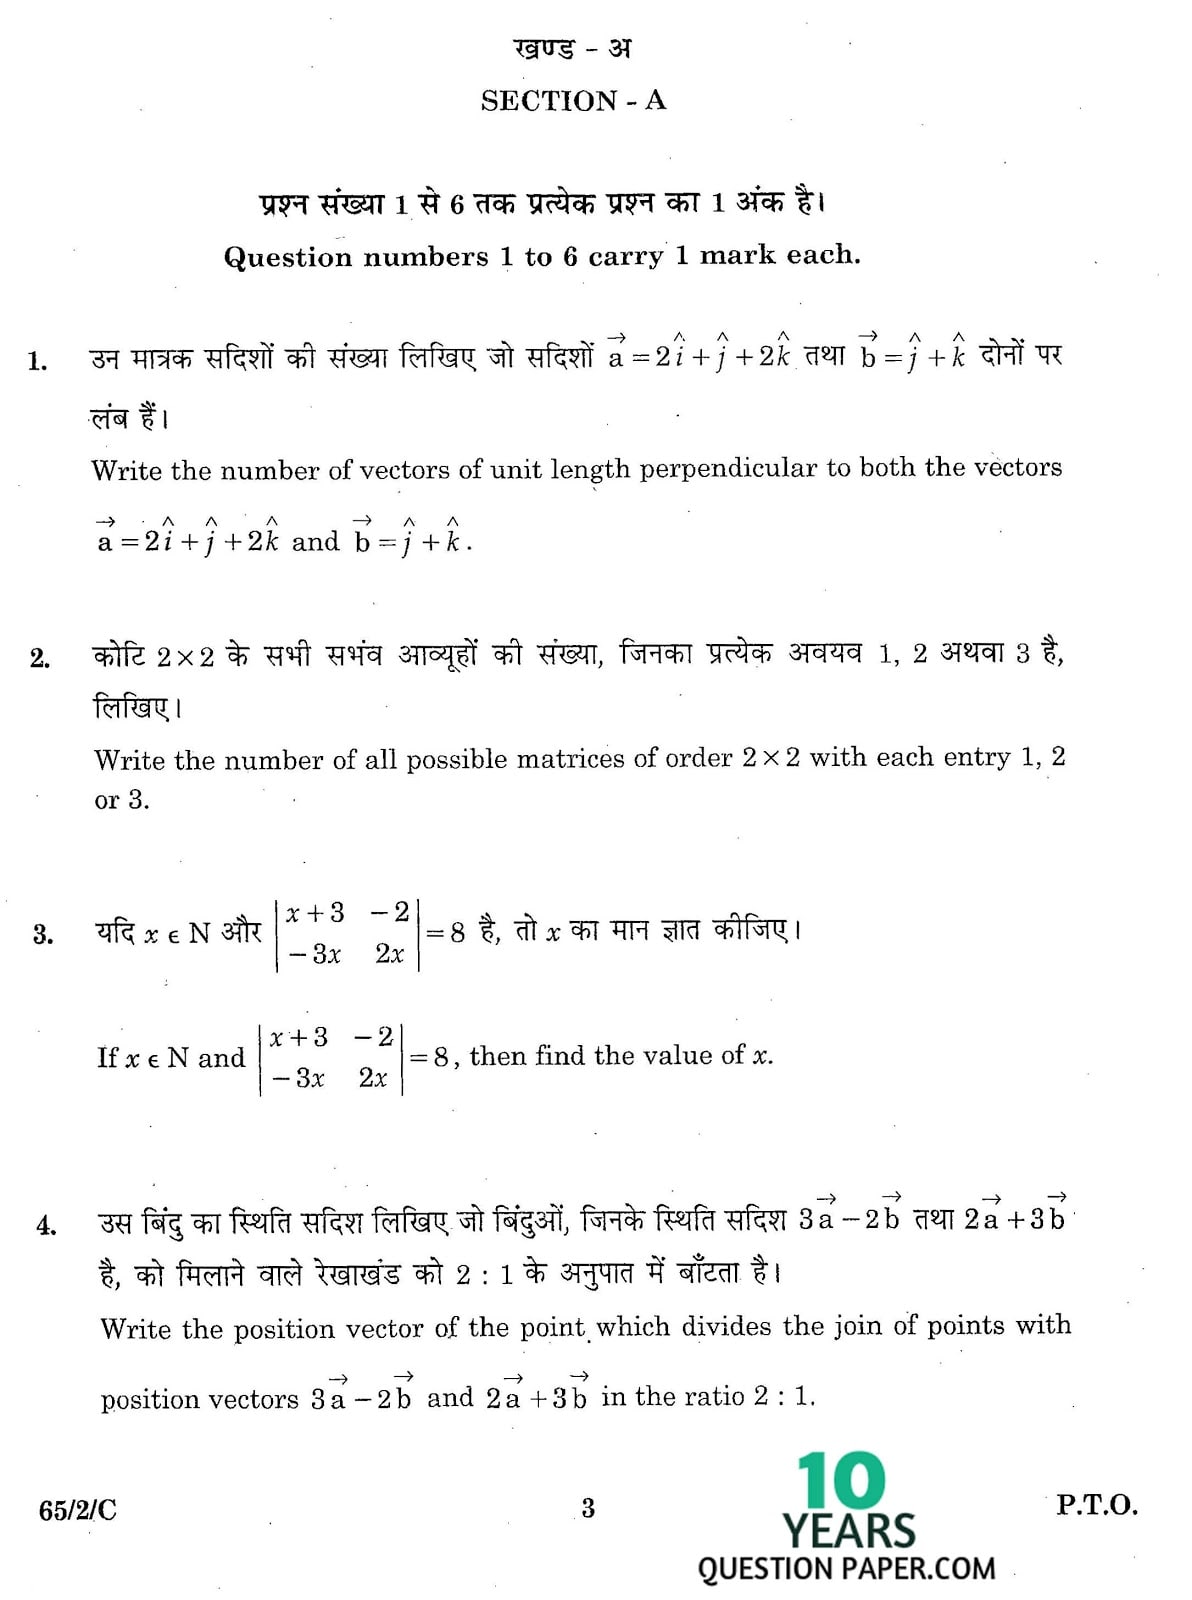 CBSE Class 12 Mathematics 2016 SET-2 Question Paper